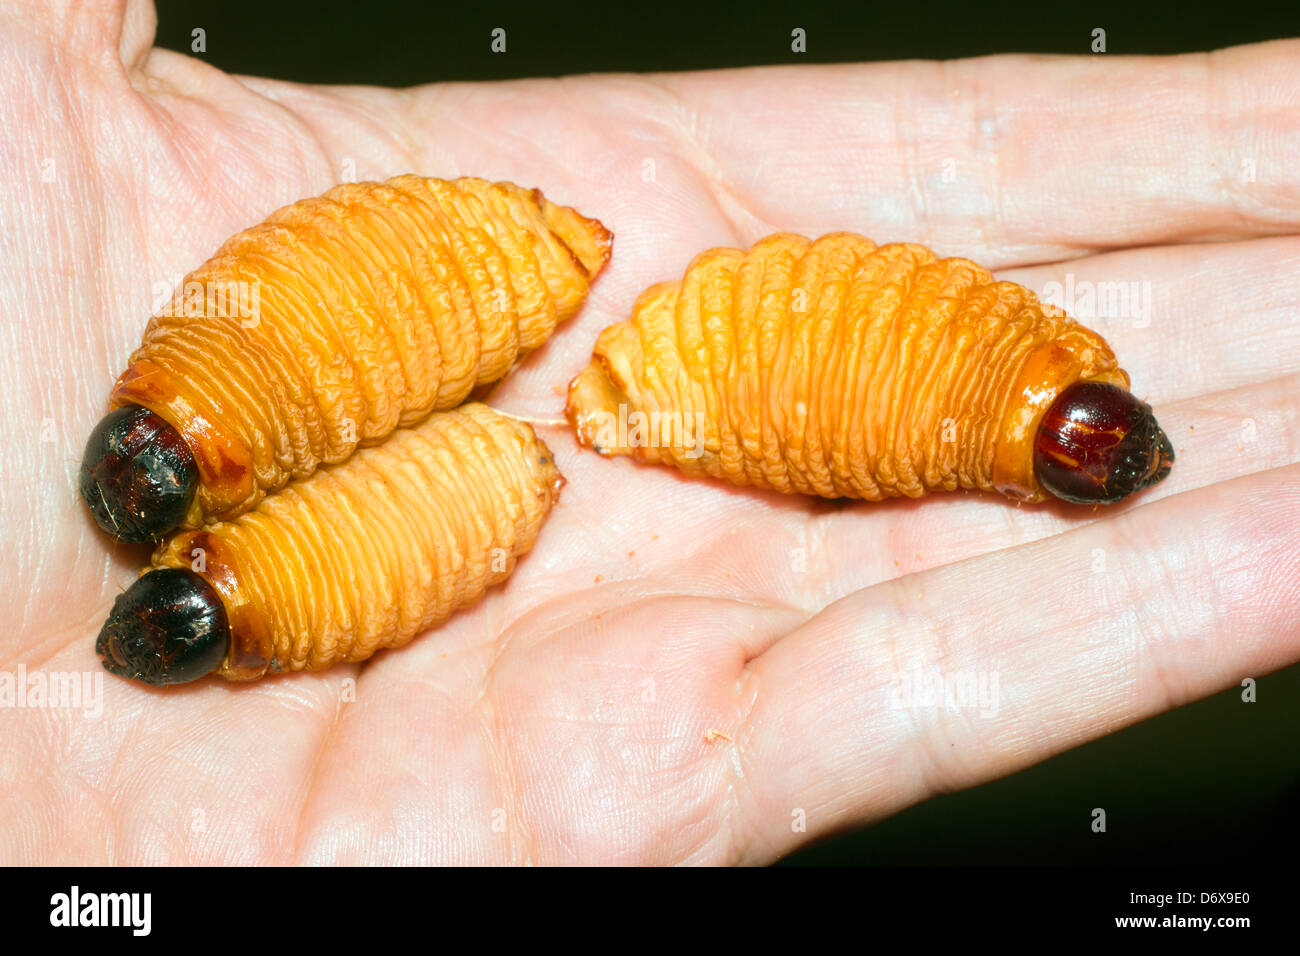 Commestibile curculione palm larve (Rhynchophorus phoenicis) da Amazon Foto  stock - Alamy